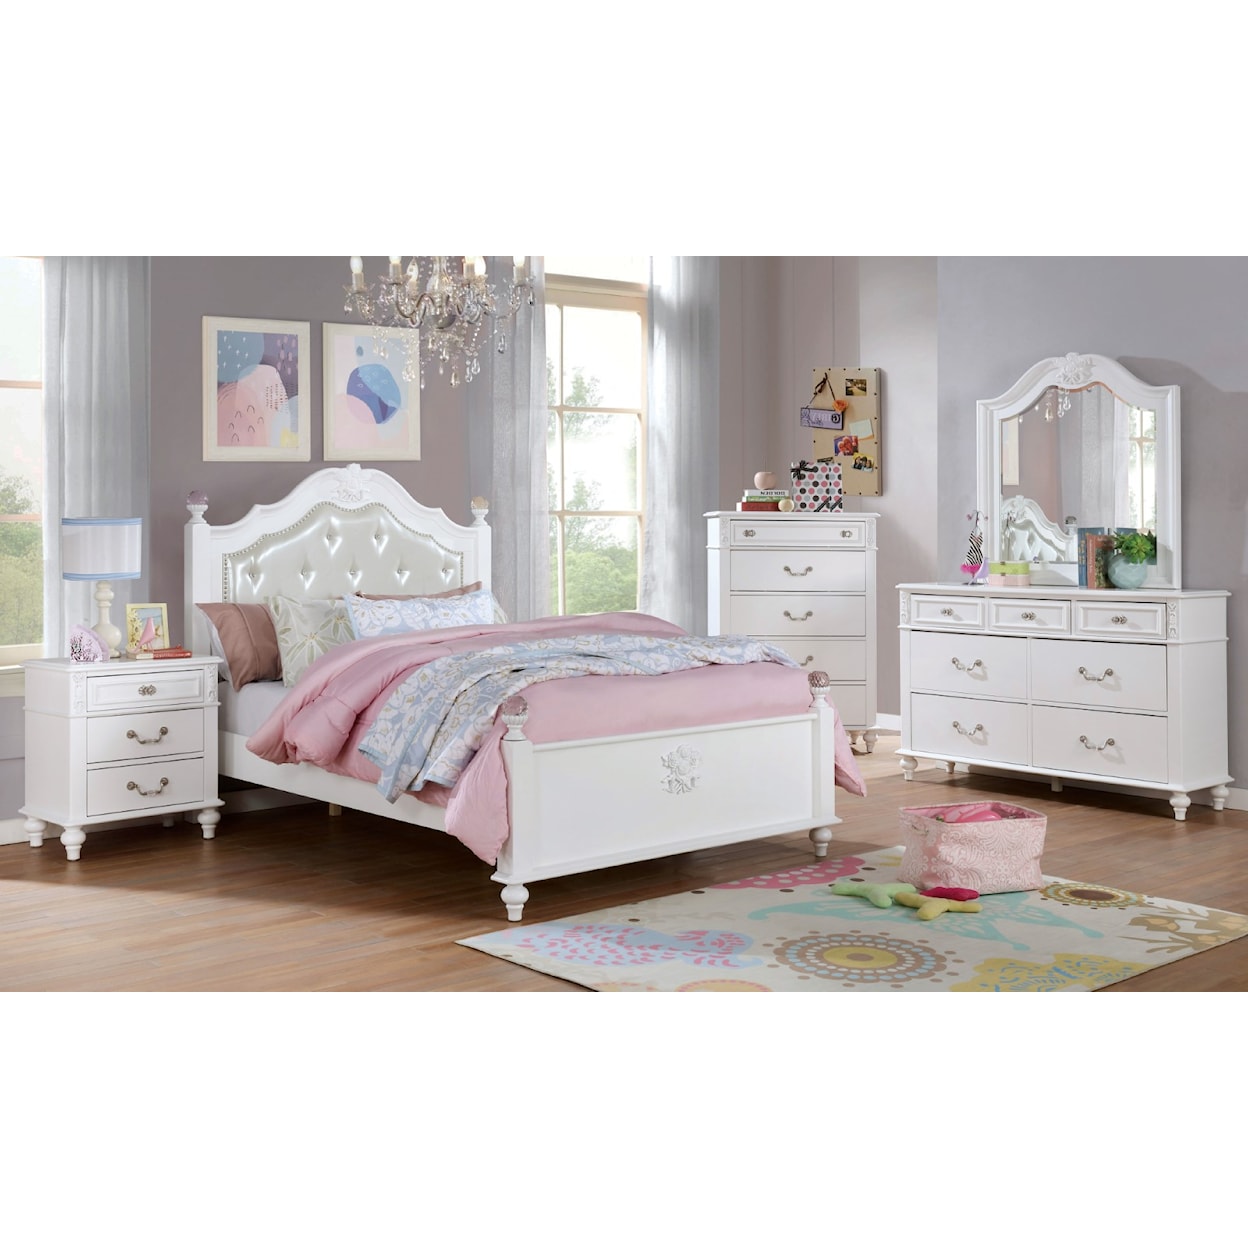 Furniture of America Belva 4 Pc. Twin Bedroom Set